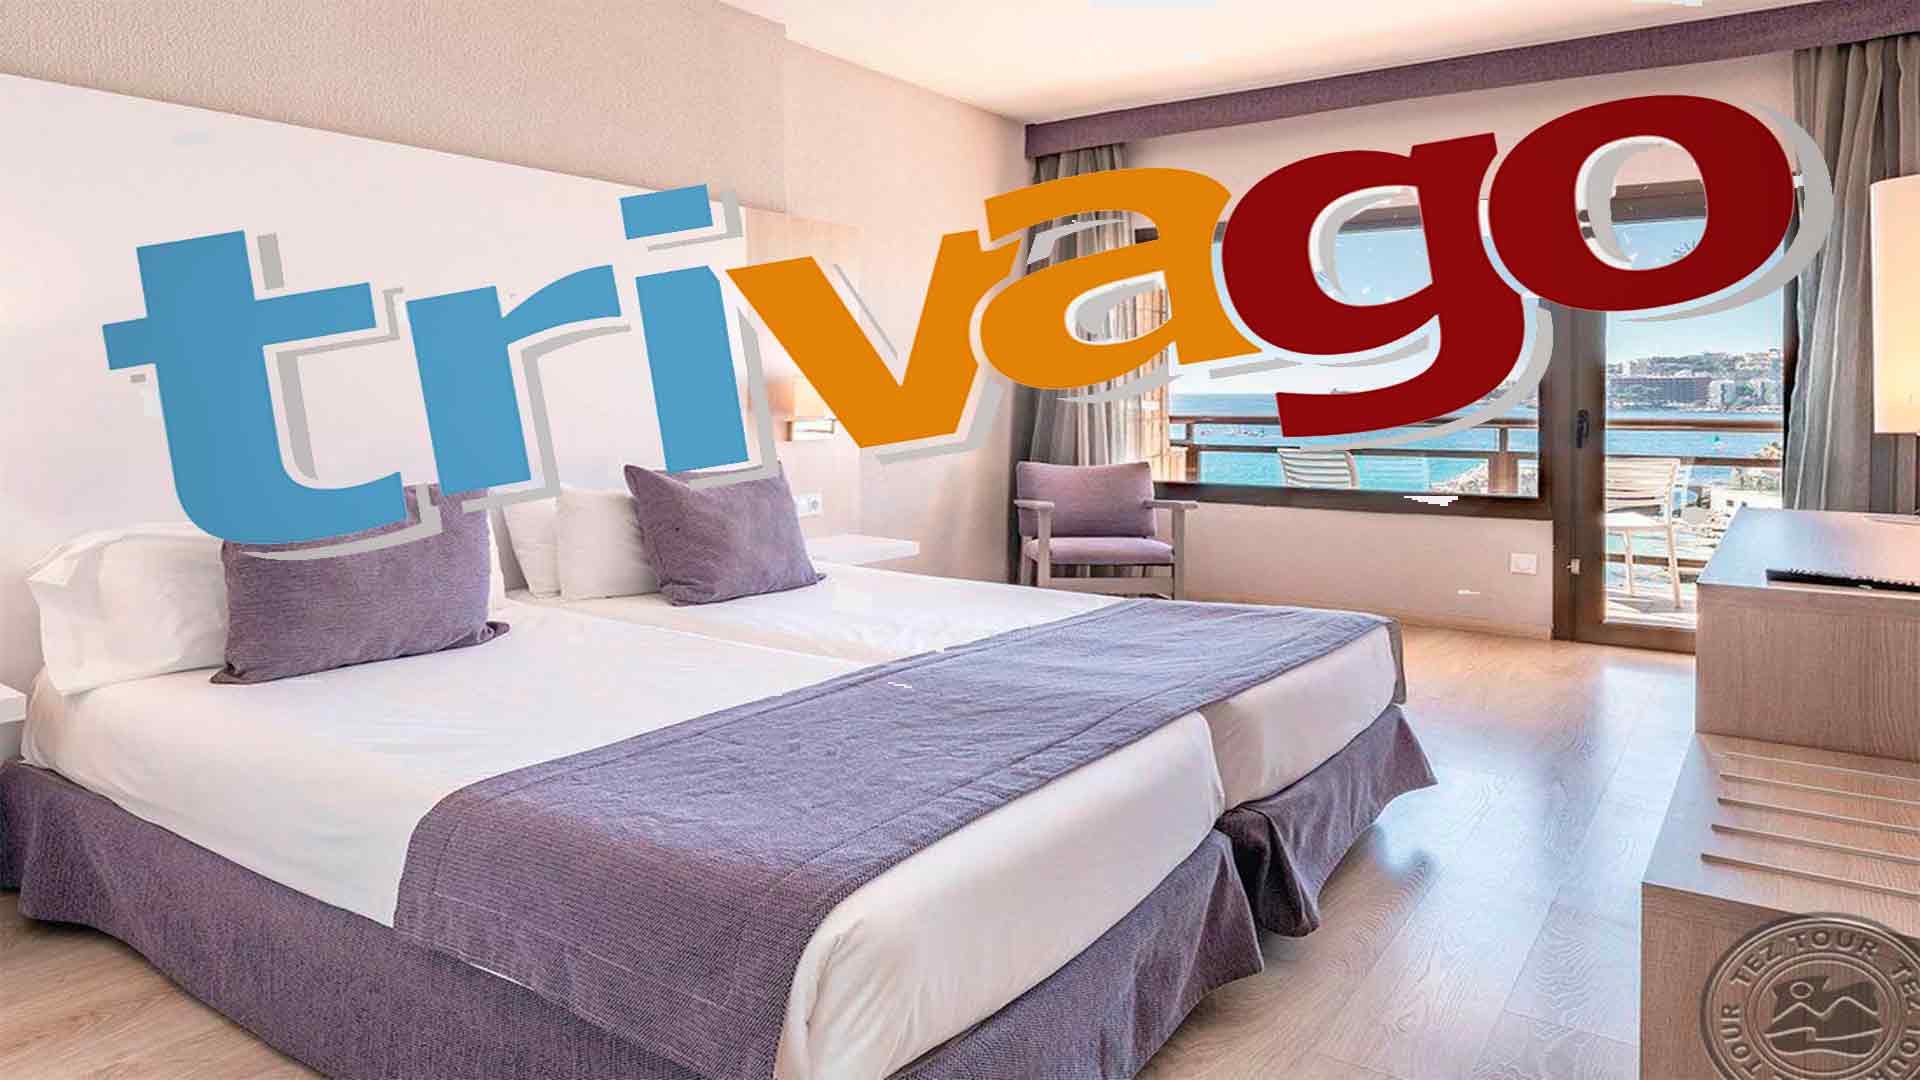  Реклама Trivago